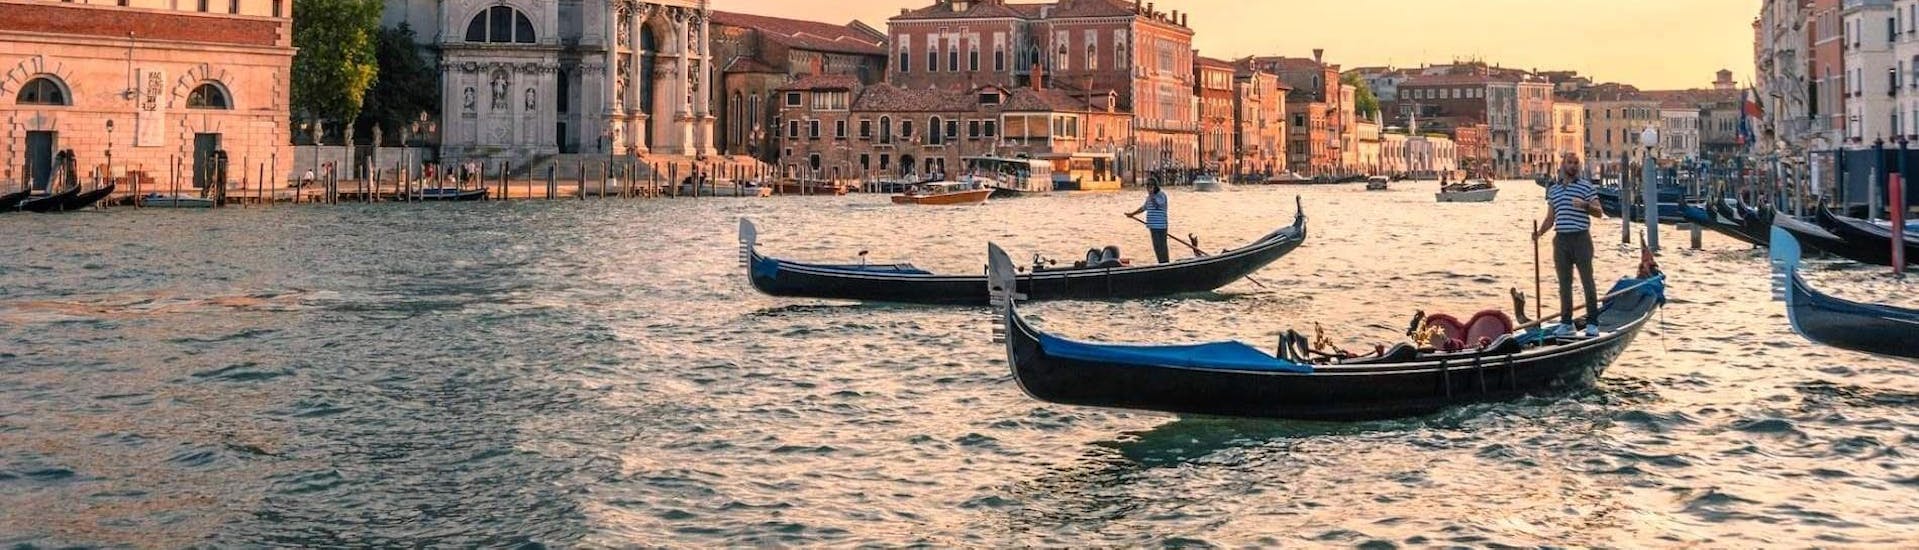 Tour en gondole et visite guidée à Venise.